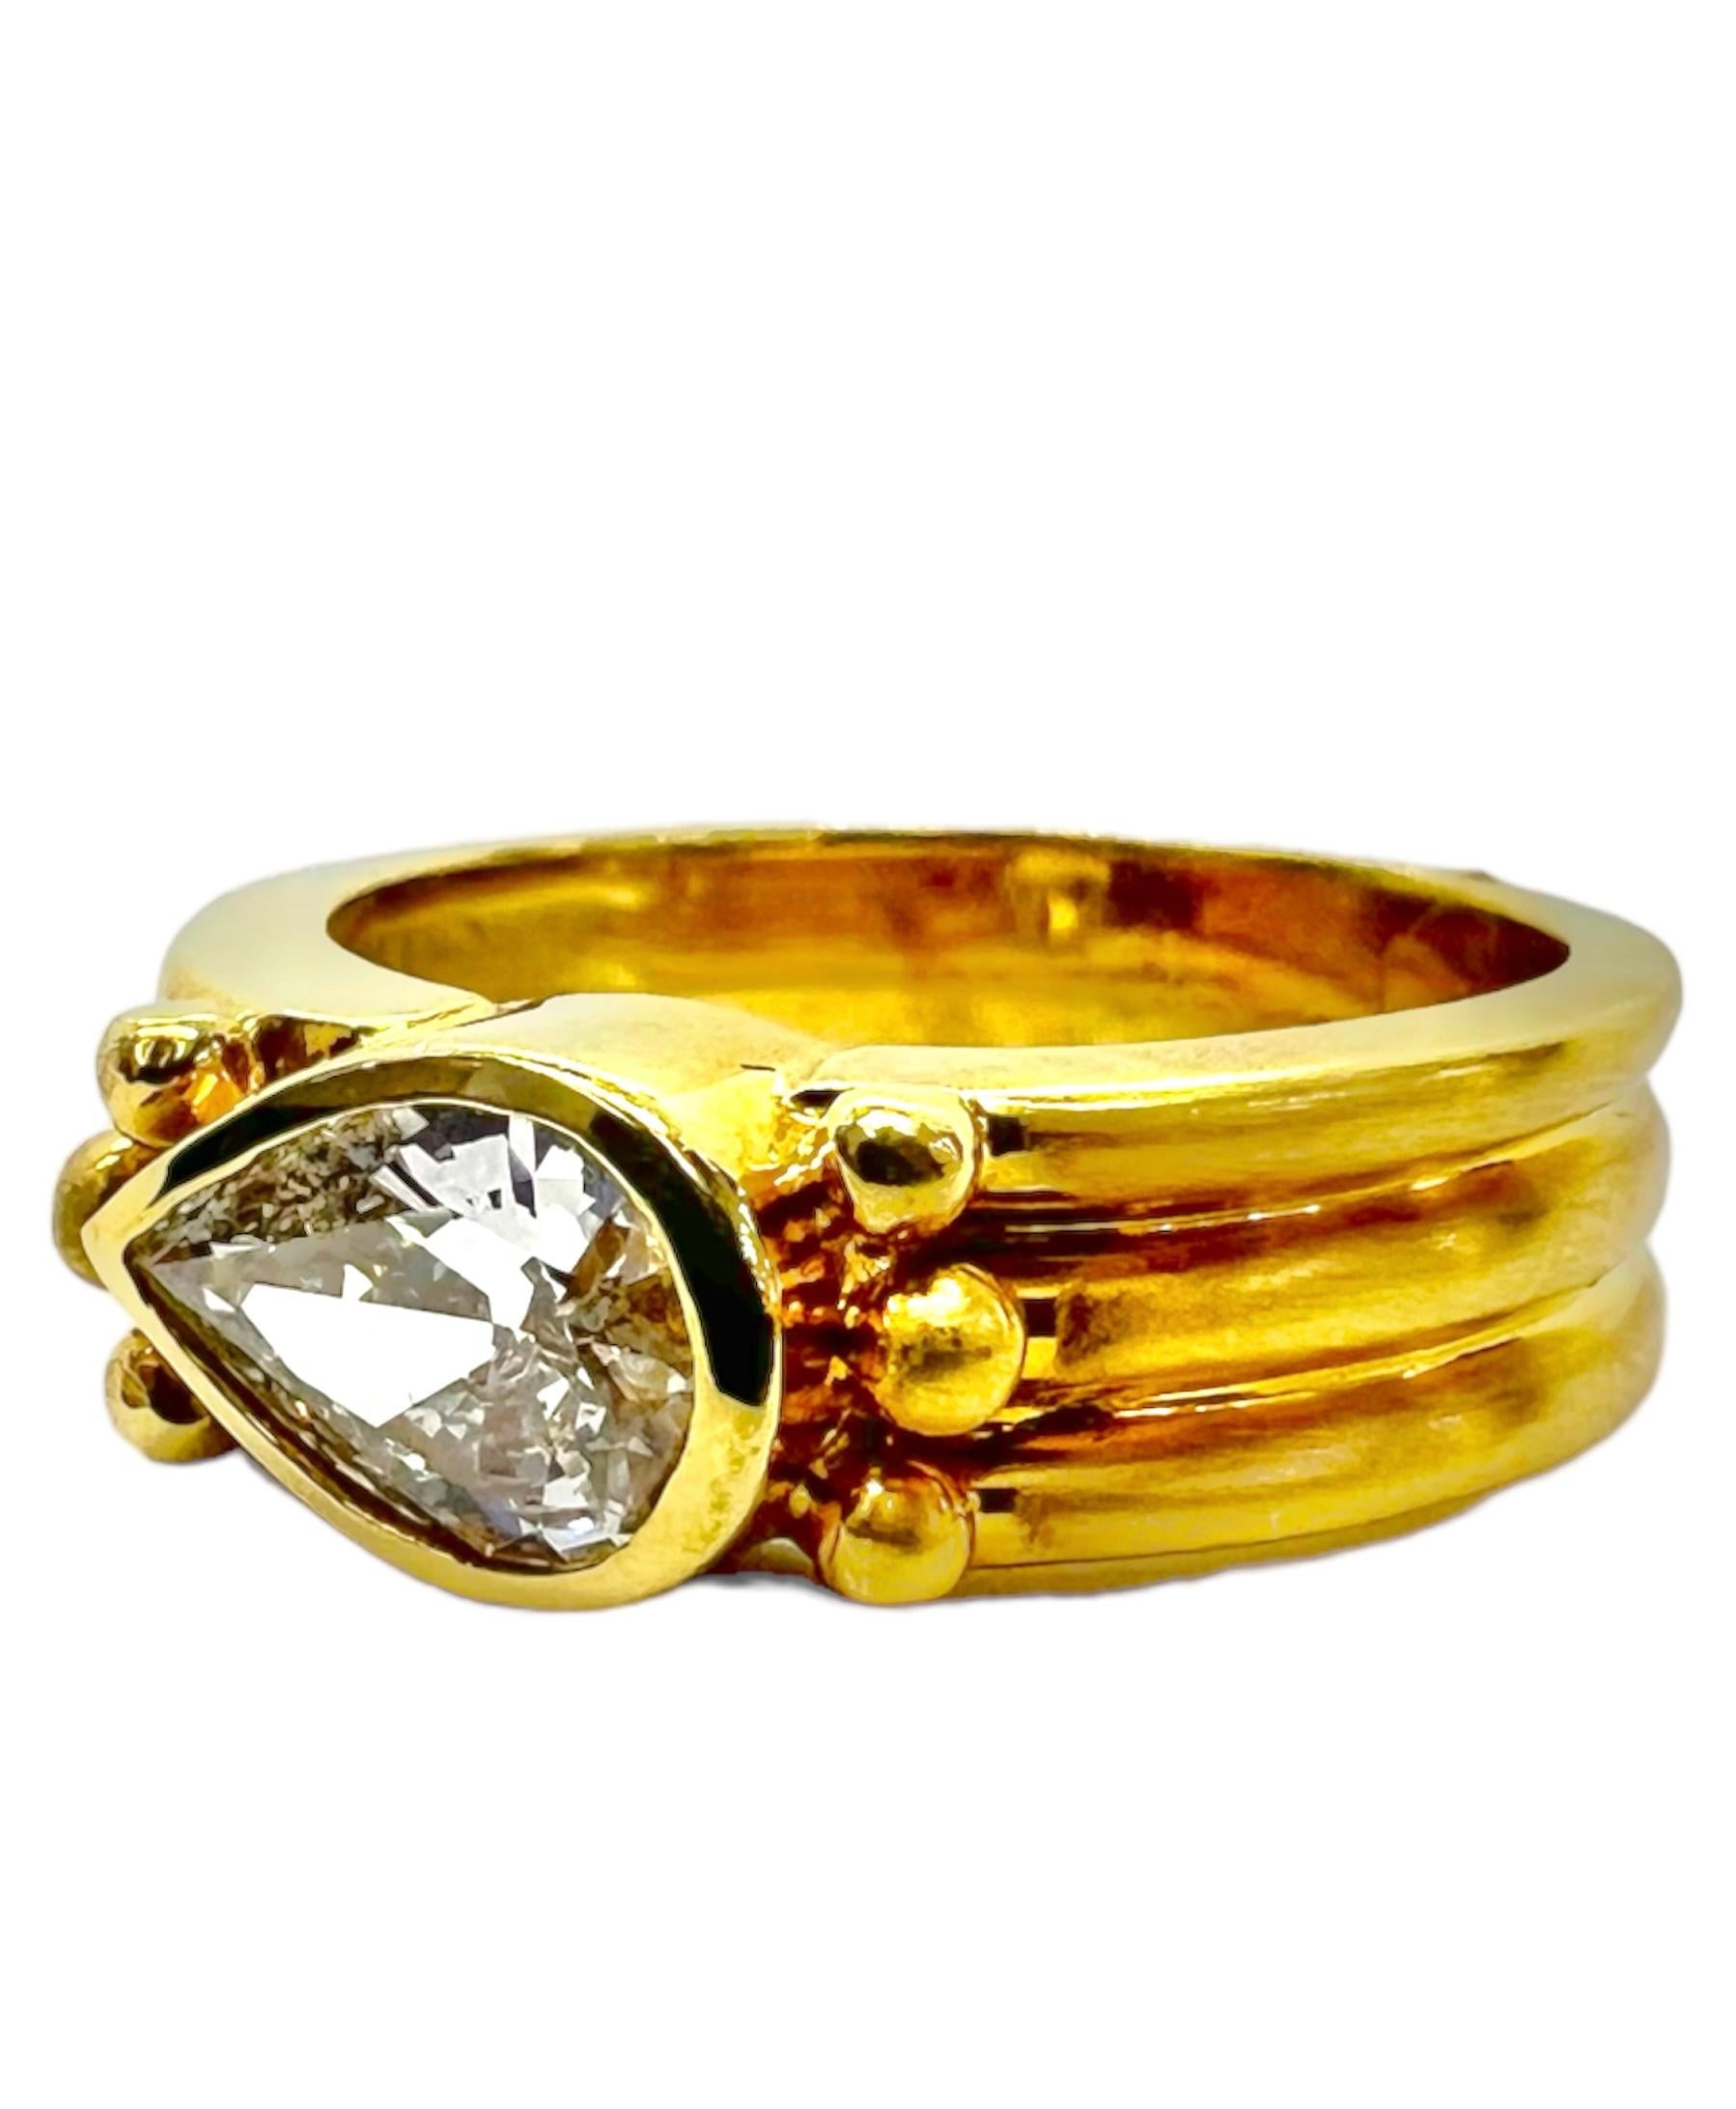 Ring aus 18 Karat Gelbgold mit birnenförmigem Diamanten.

Sophia D von Joseph Dardashti LTD ist seit 35 Jahren weltweit bekannt und lässt sich vom klassischen Art-Déco-Design inspirieren, das mit modernen Fertigungstechniken verschmilzt.  